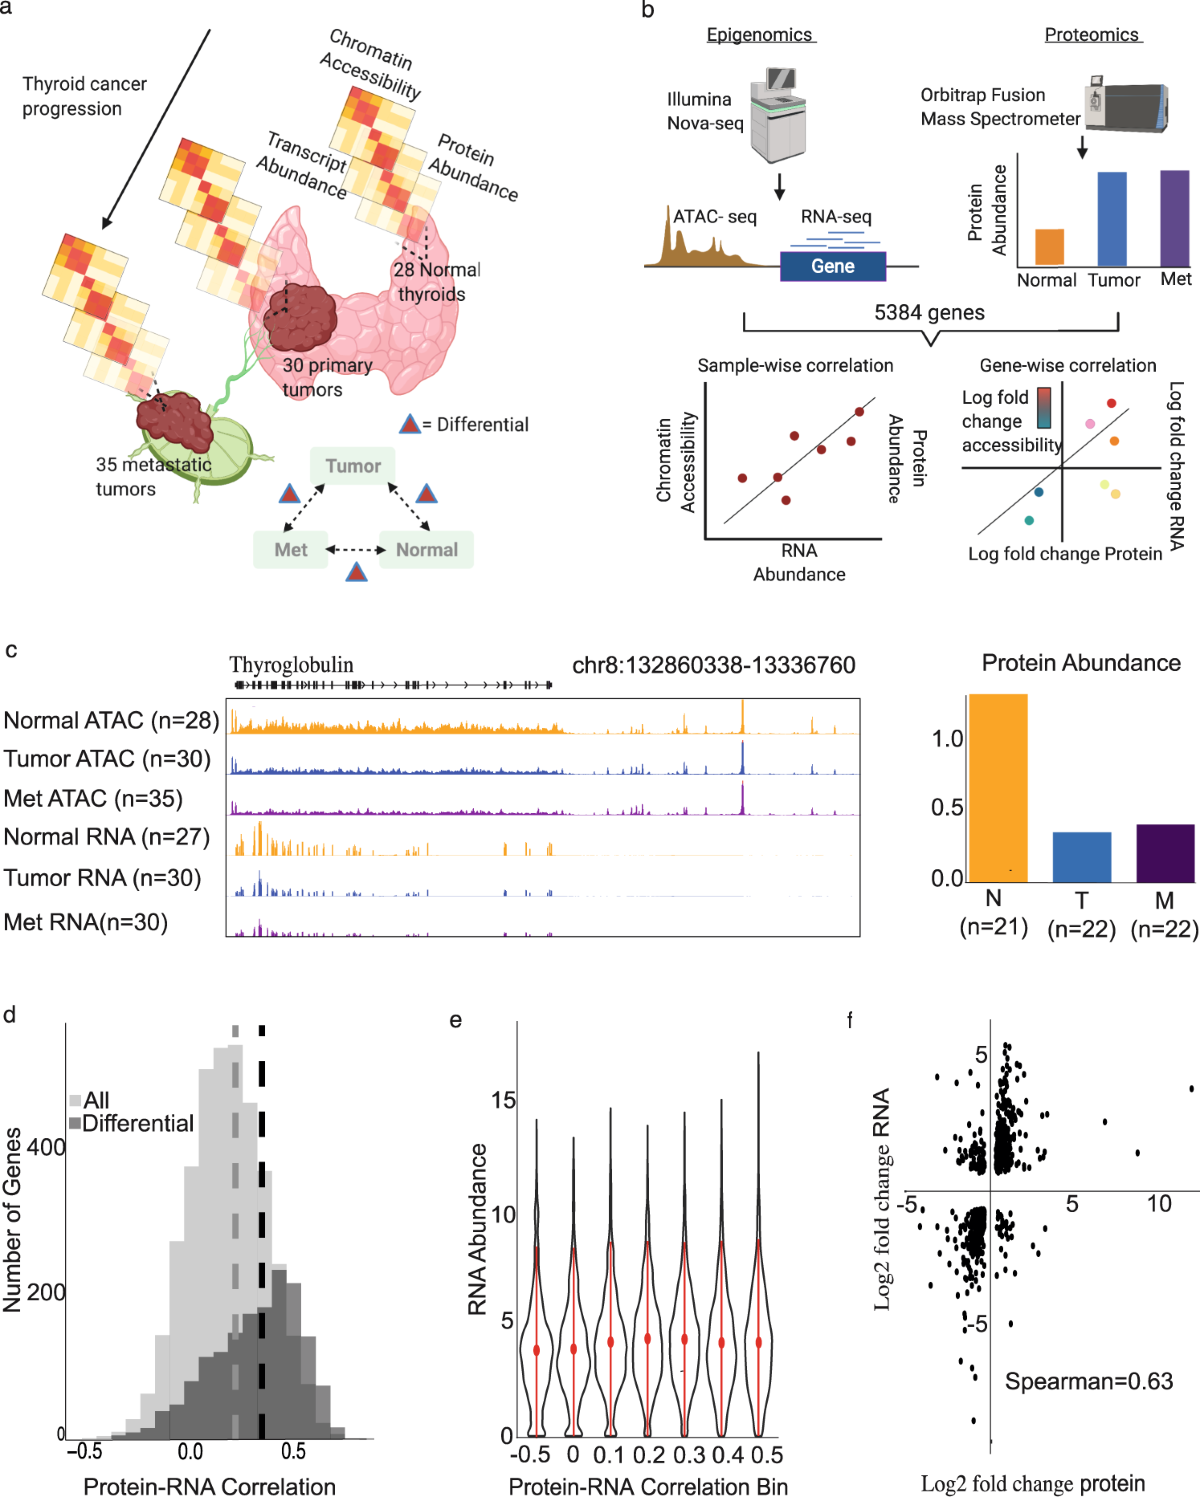 Mitochondrial-Localized Protein Transcript Abundance can Predict